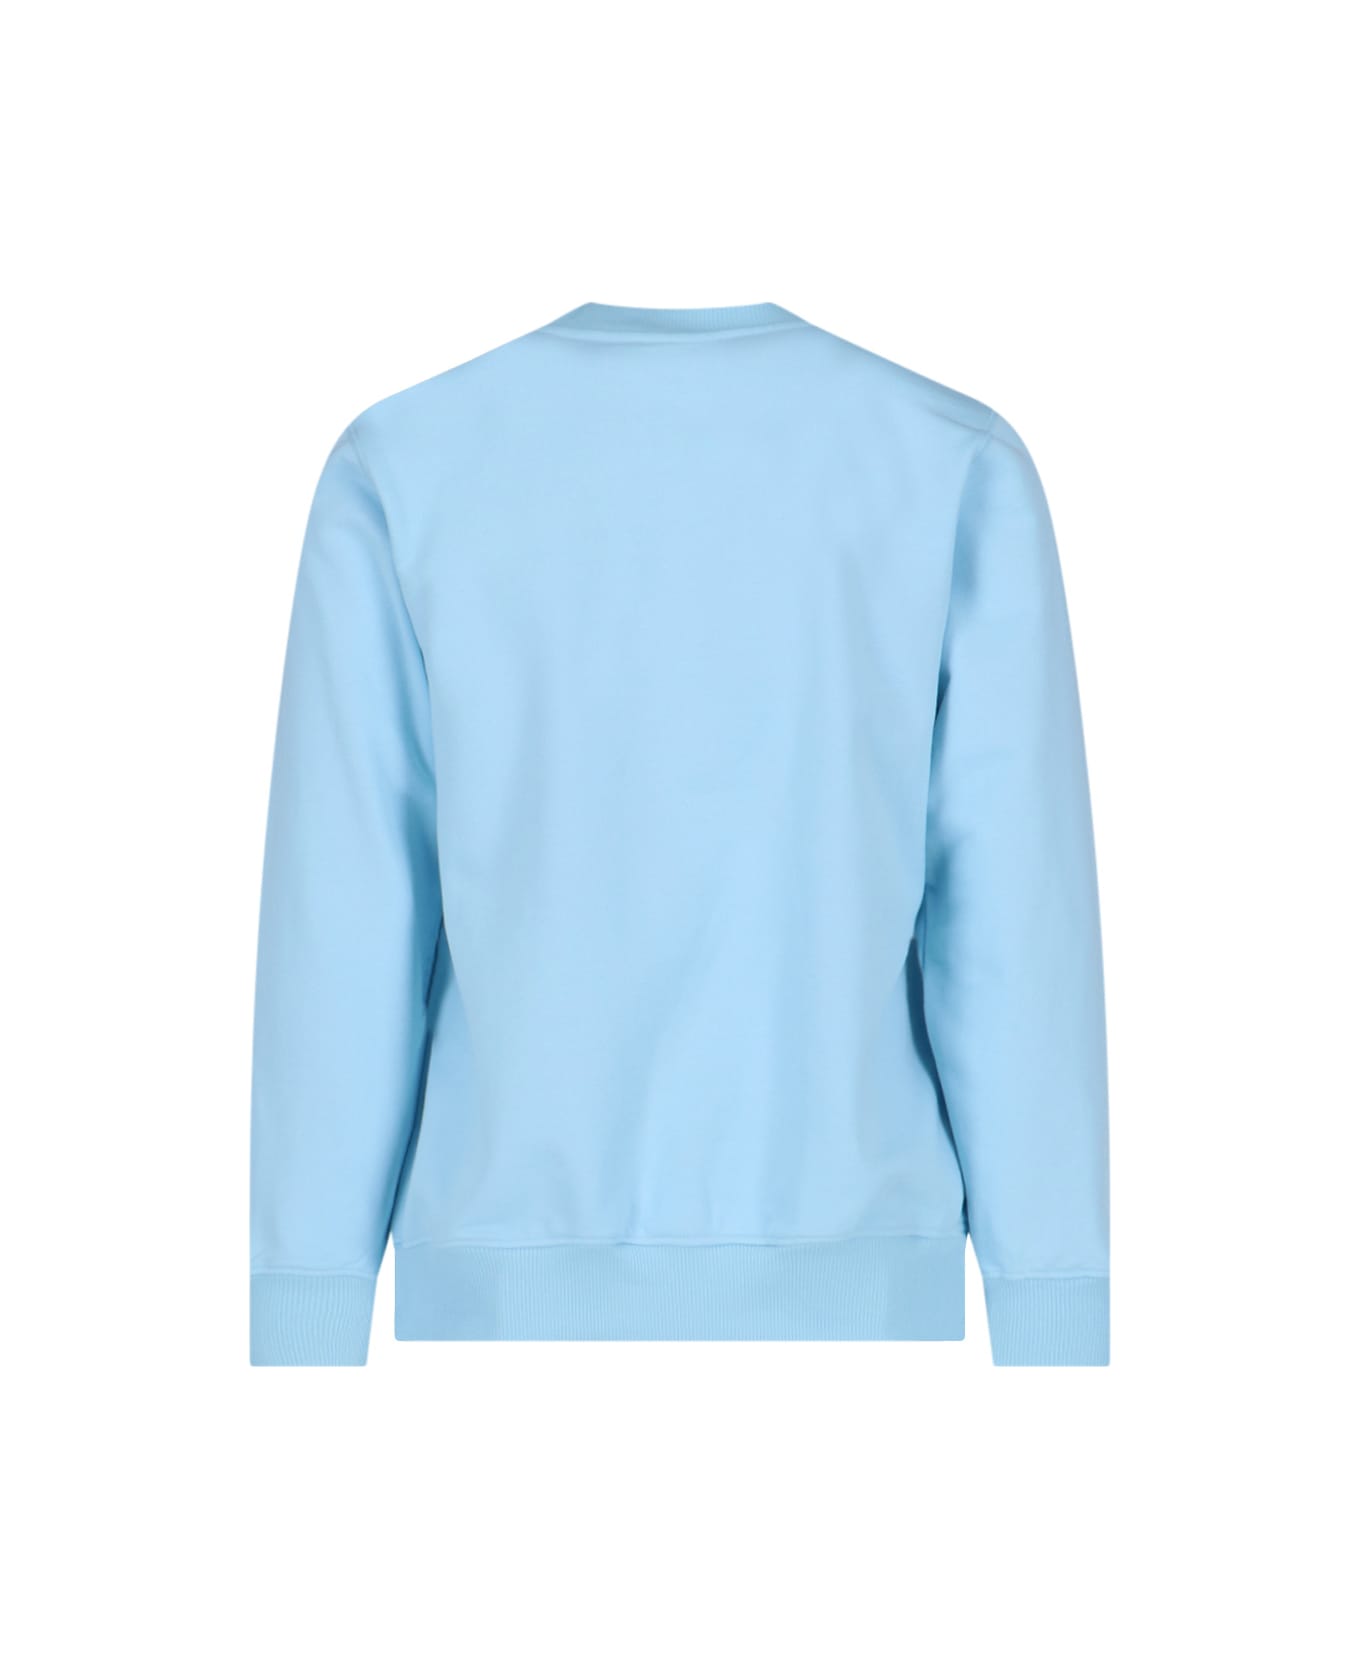 Casablanca Sweater - Light blue